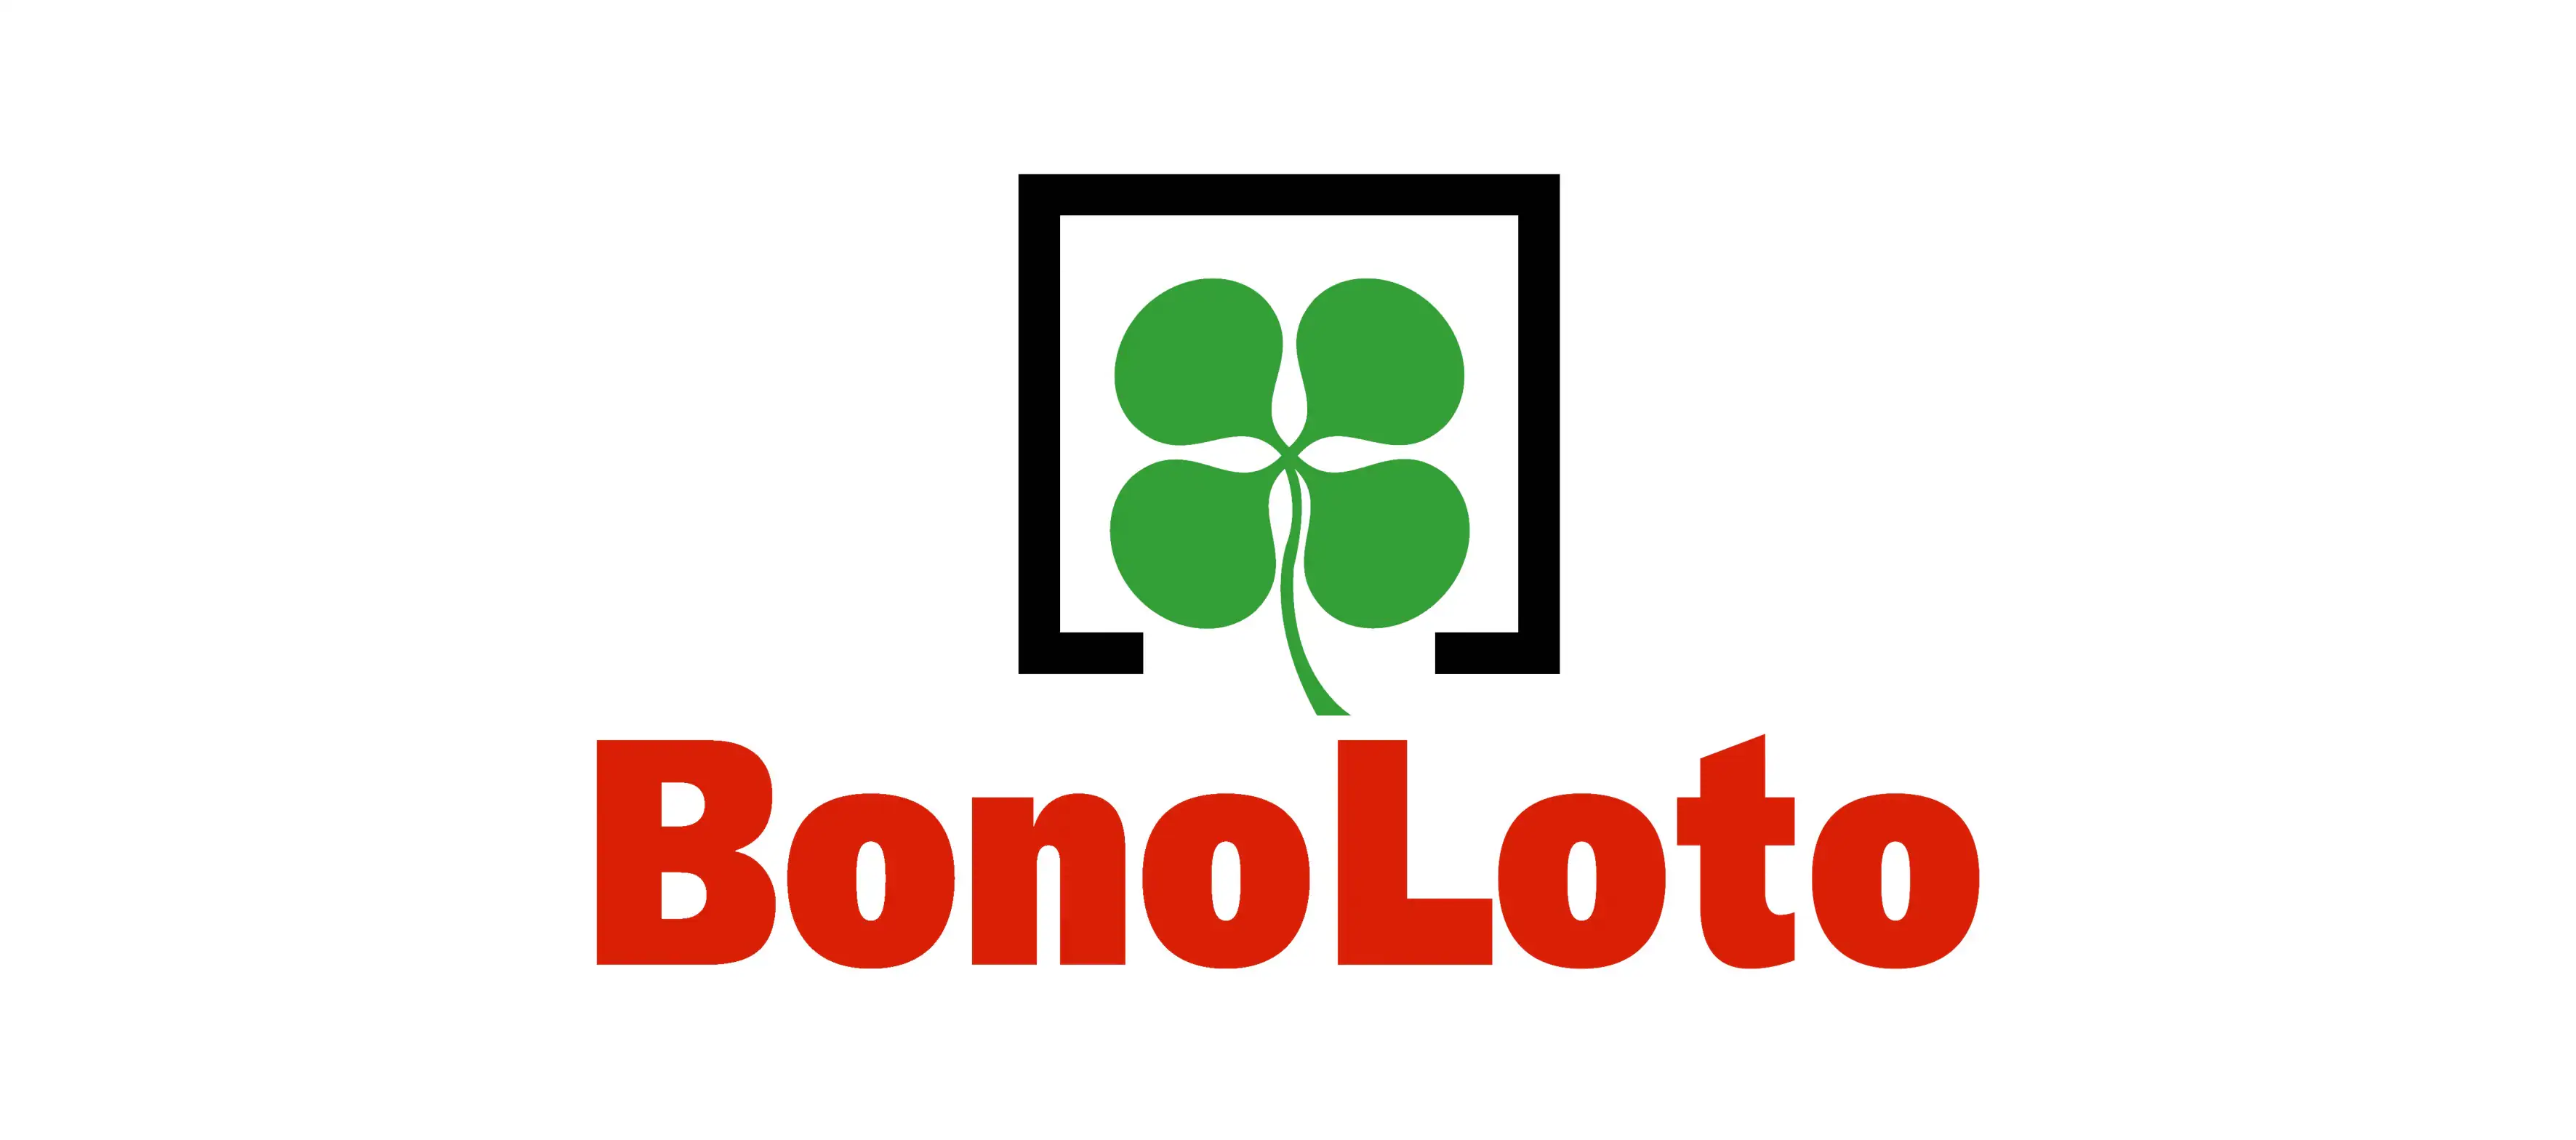 Comprobar la Bonoloto del jueves 3 de octubre: resultados y premios